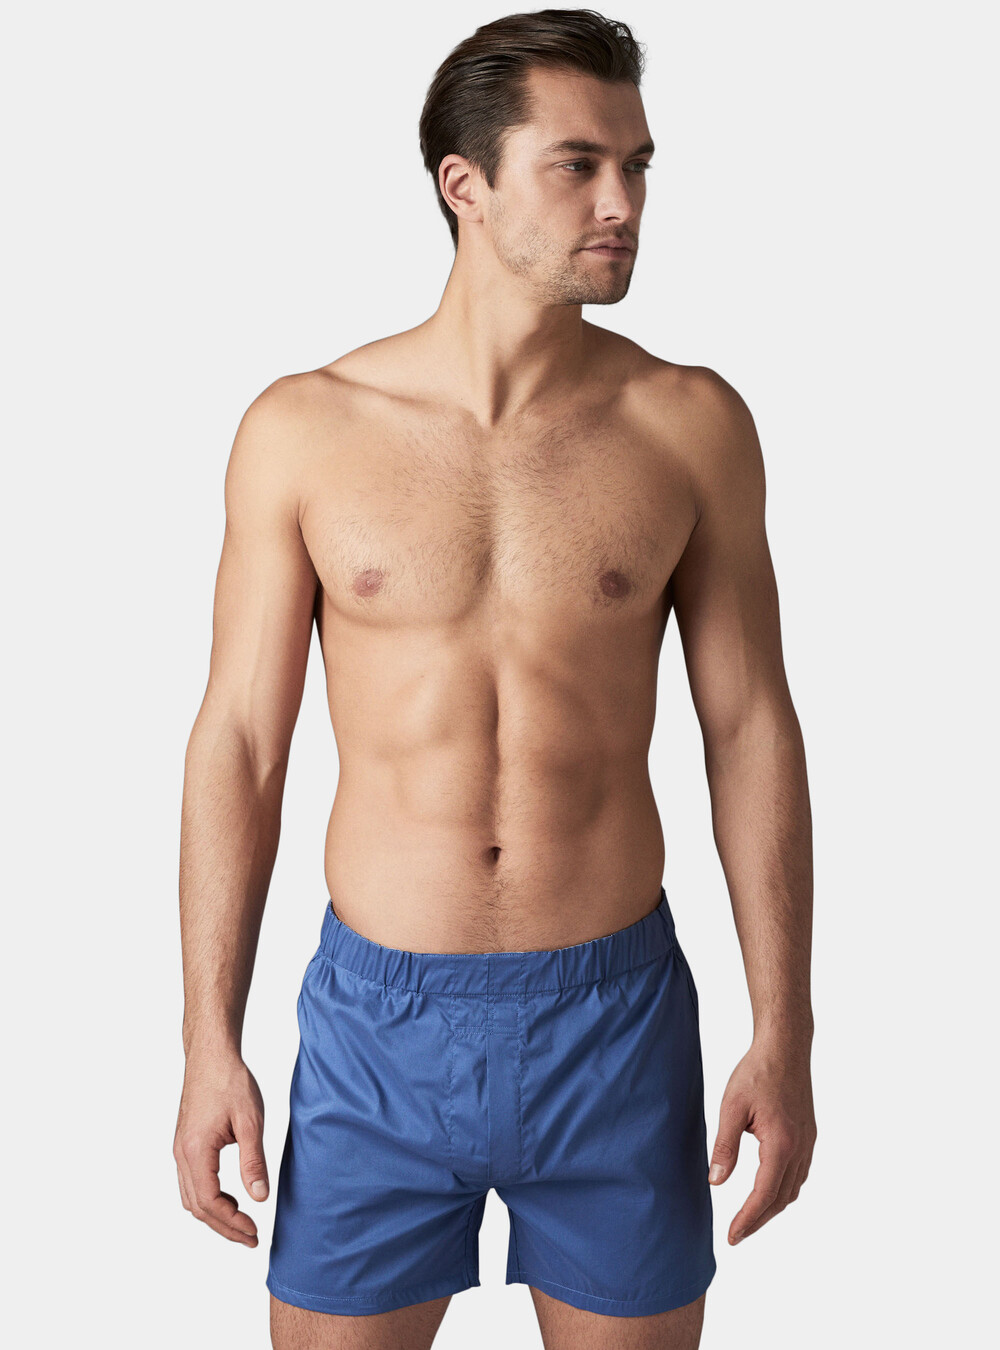 Cotton stretch boxer shorts | GutteridgeEU | Men's catalog-gutteridge ...